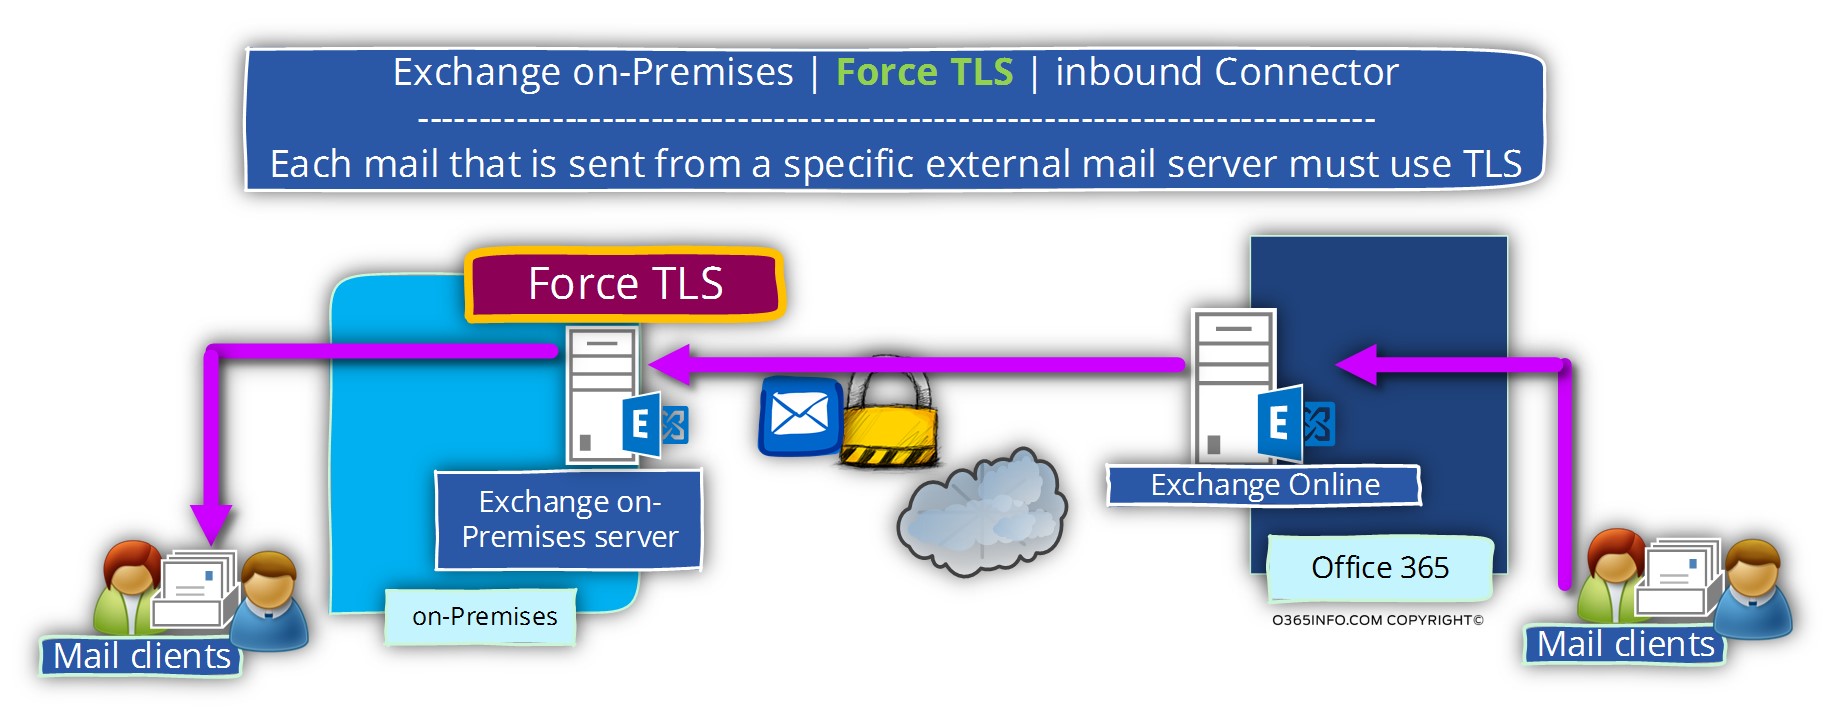 Exchange on-Premises -Force TLS - inbound Connector